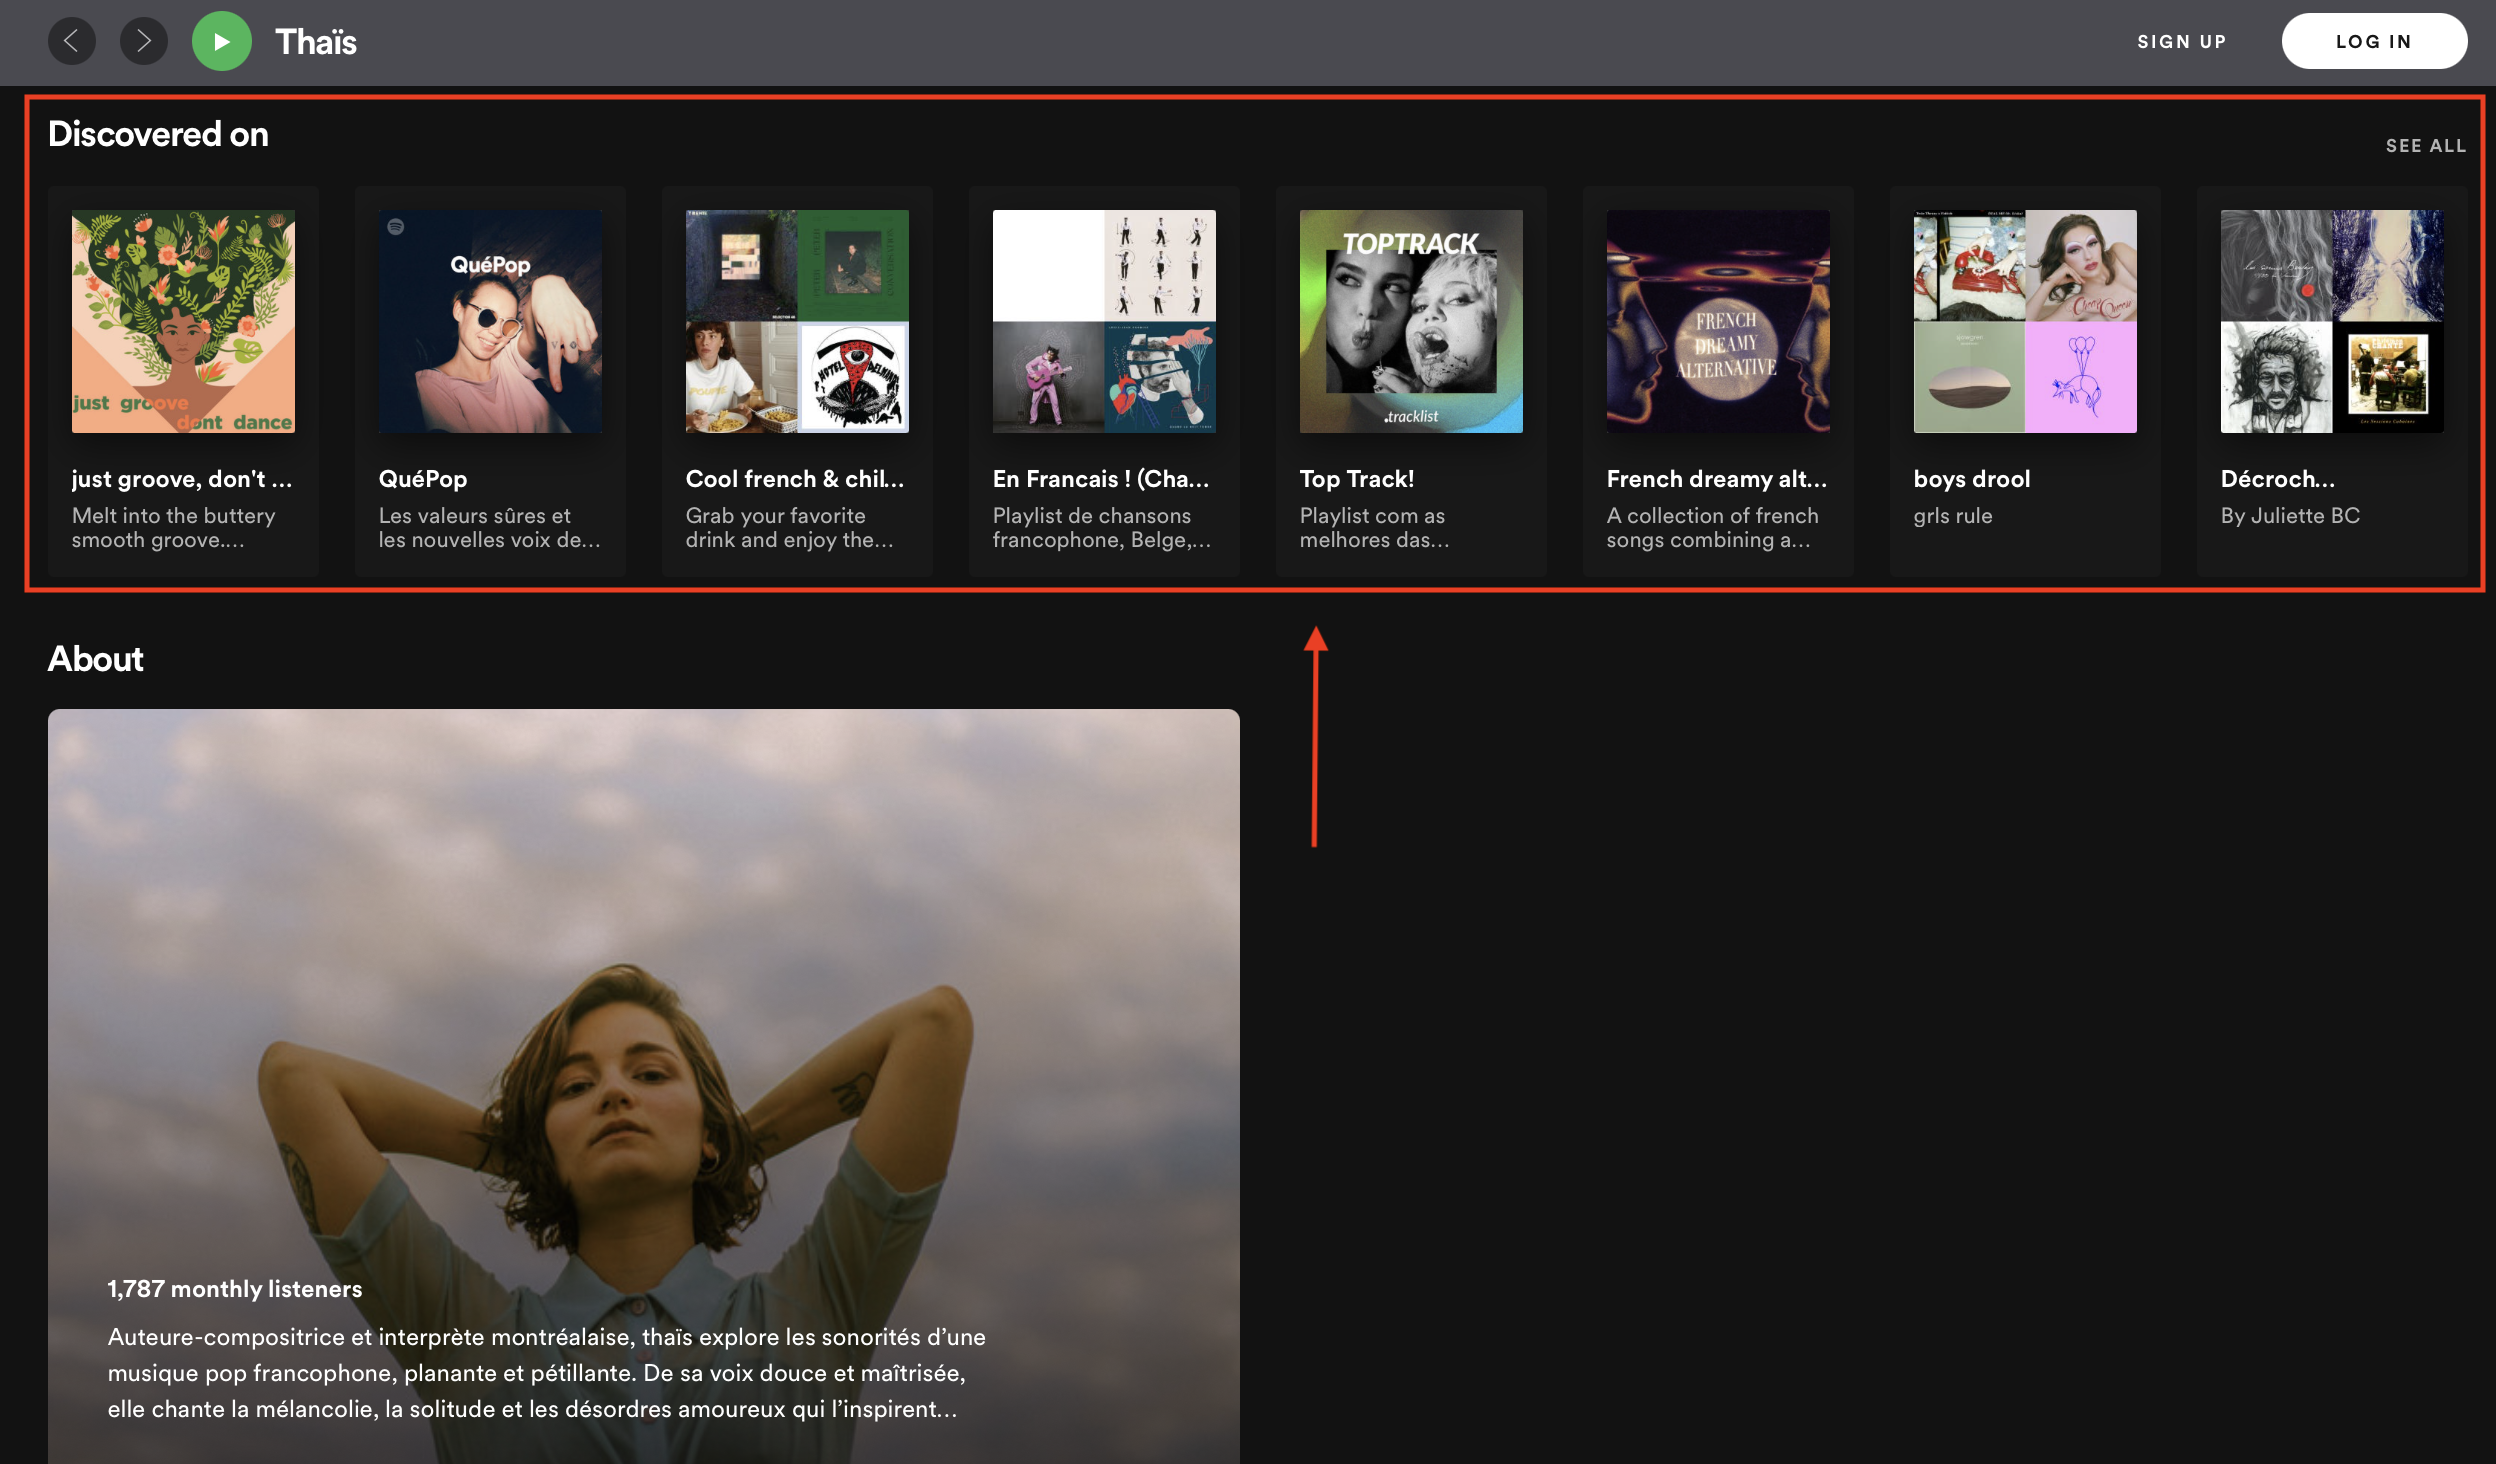 El artista puede ver qué playlists oficiales o de terceros aparecen artistas similares en Spotify.